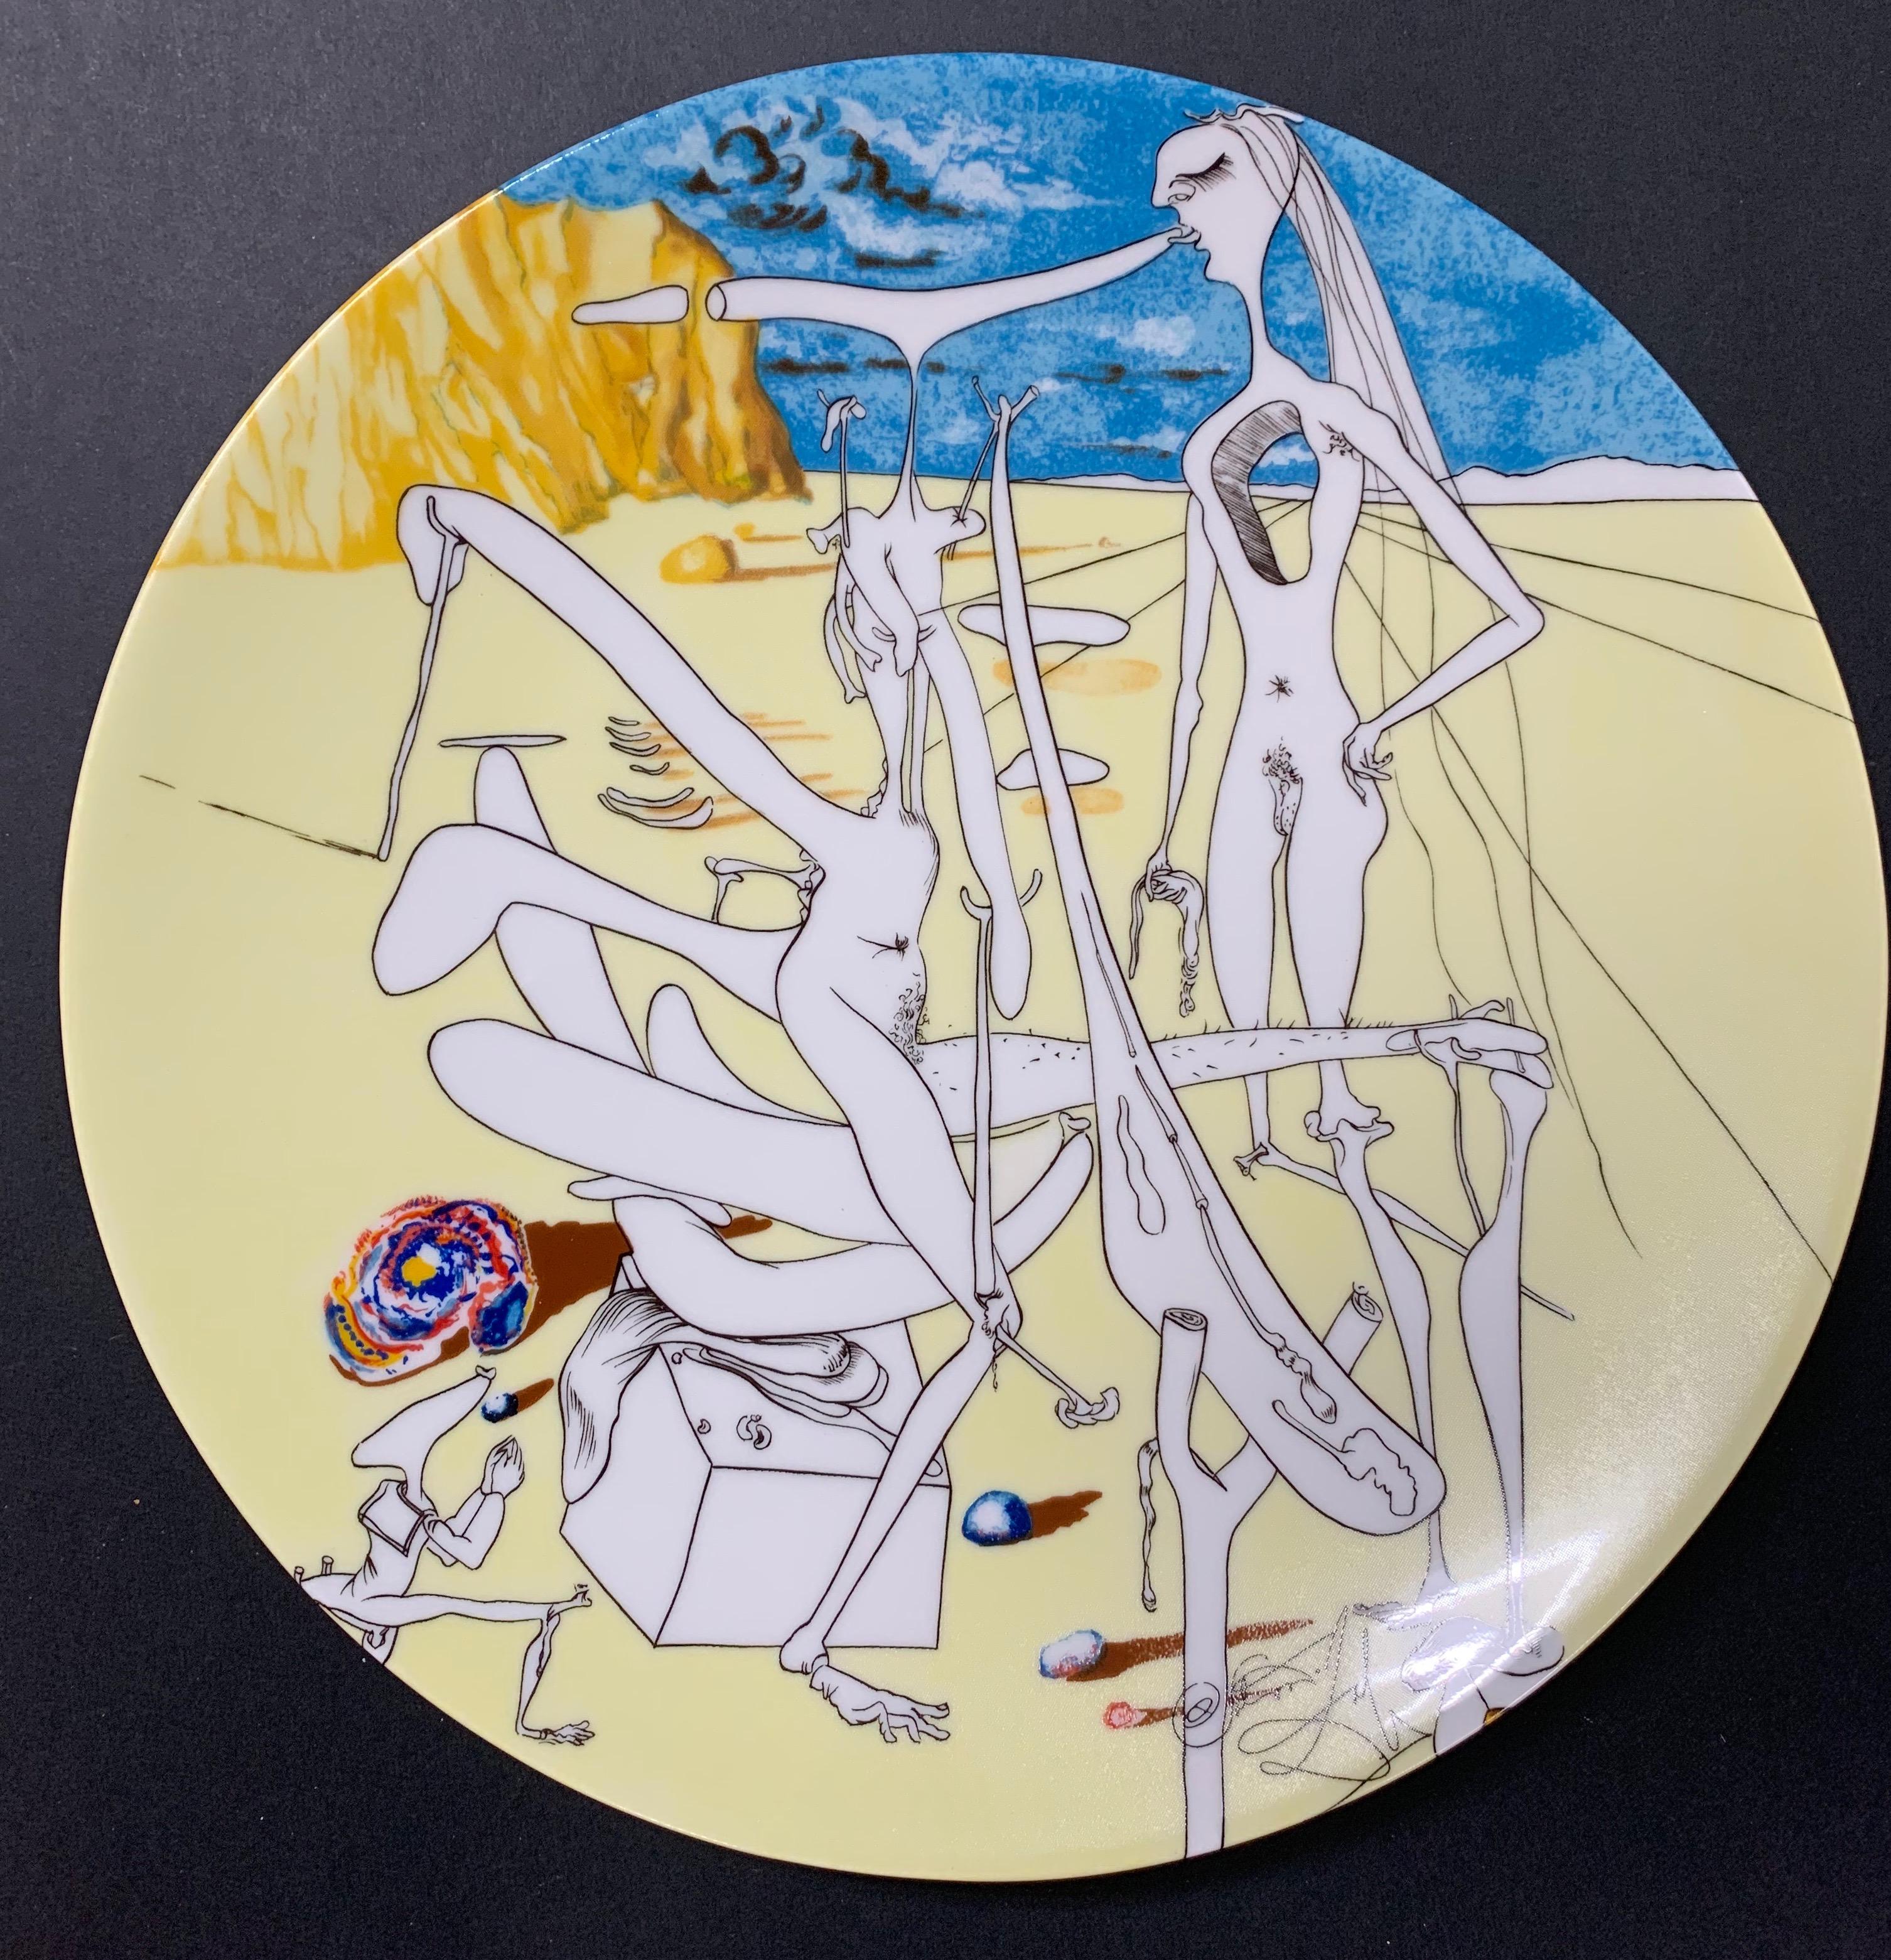 Infra-terrestres adores par Dali a 5 ans car il se croyait insecte - Art by Salvador Dalí